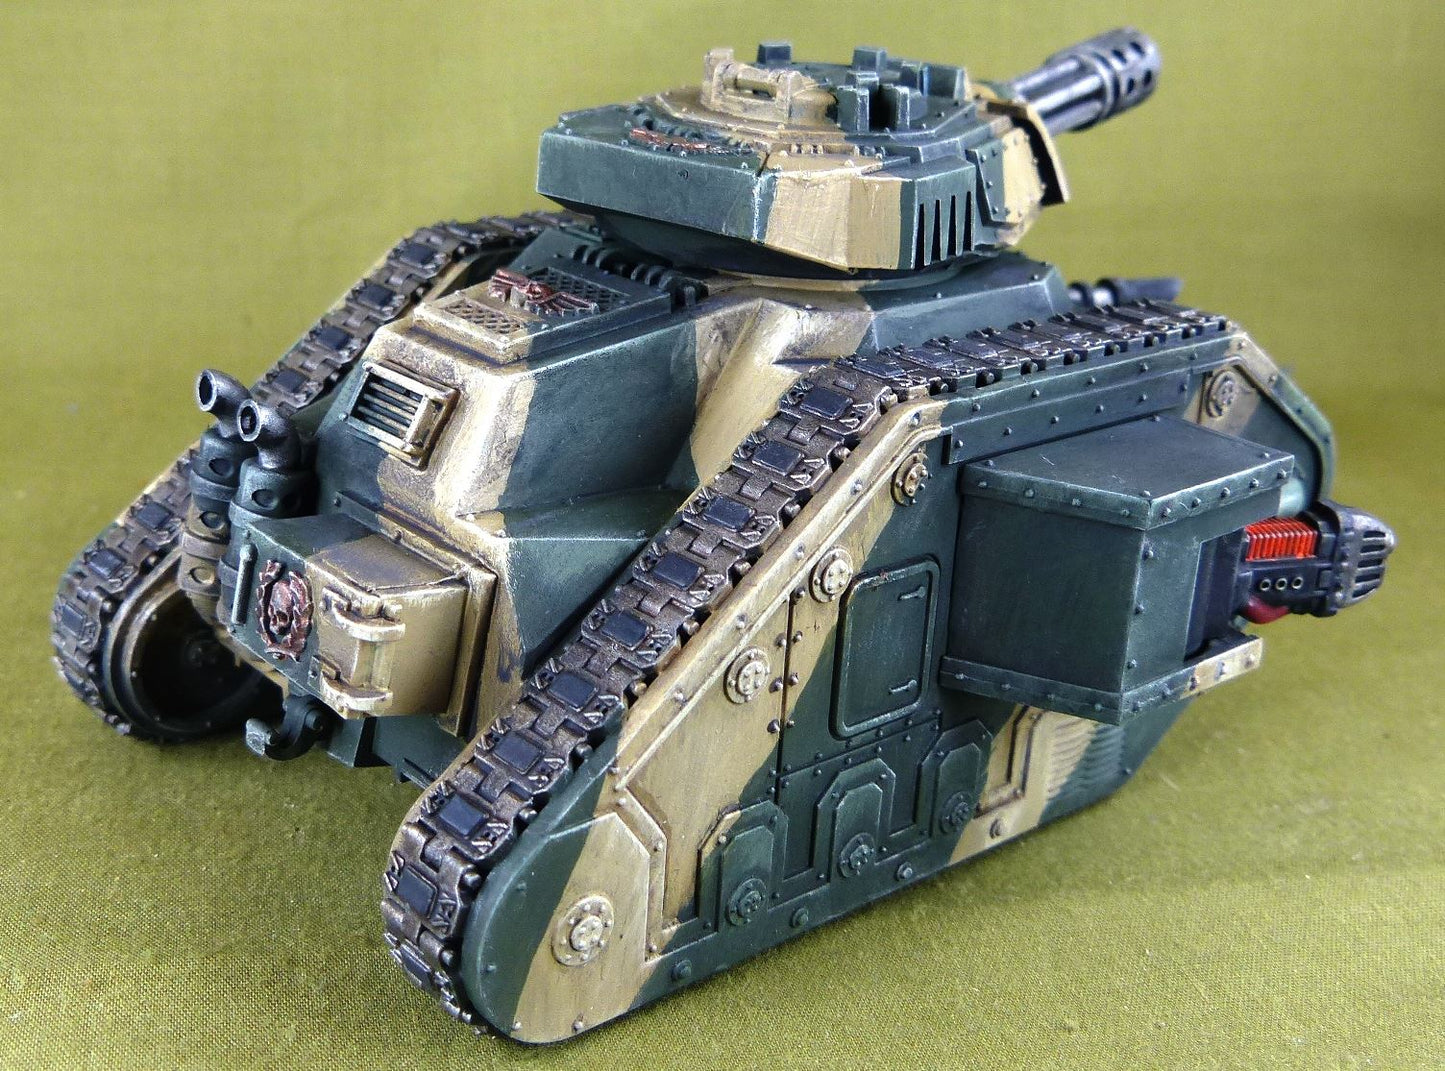 Leman russ Tank - Astra militarum - Painted - Warhammer AoS 40k #3CC